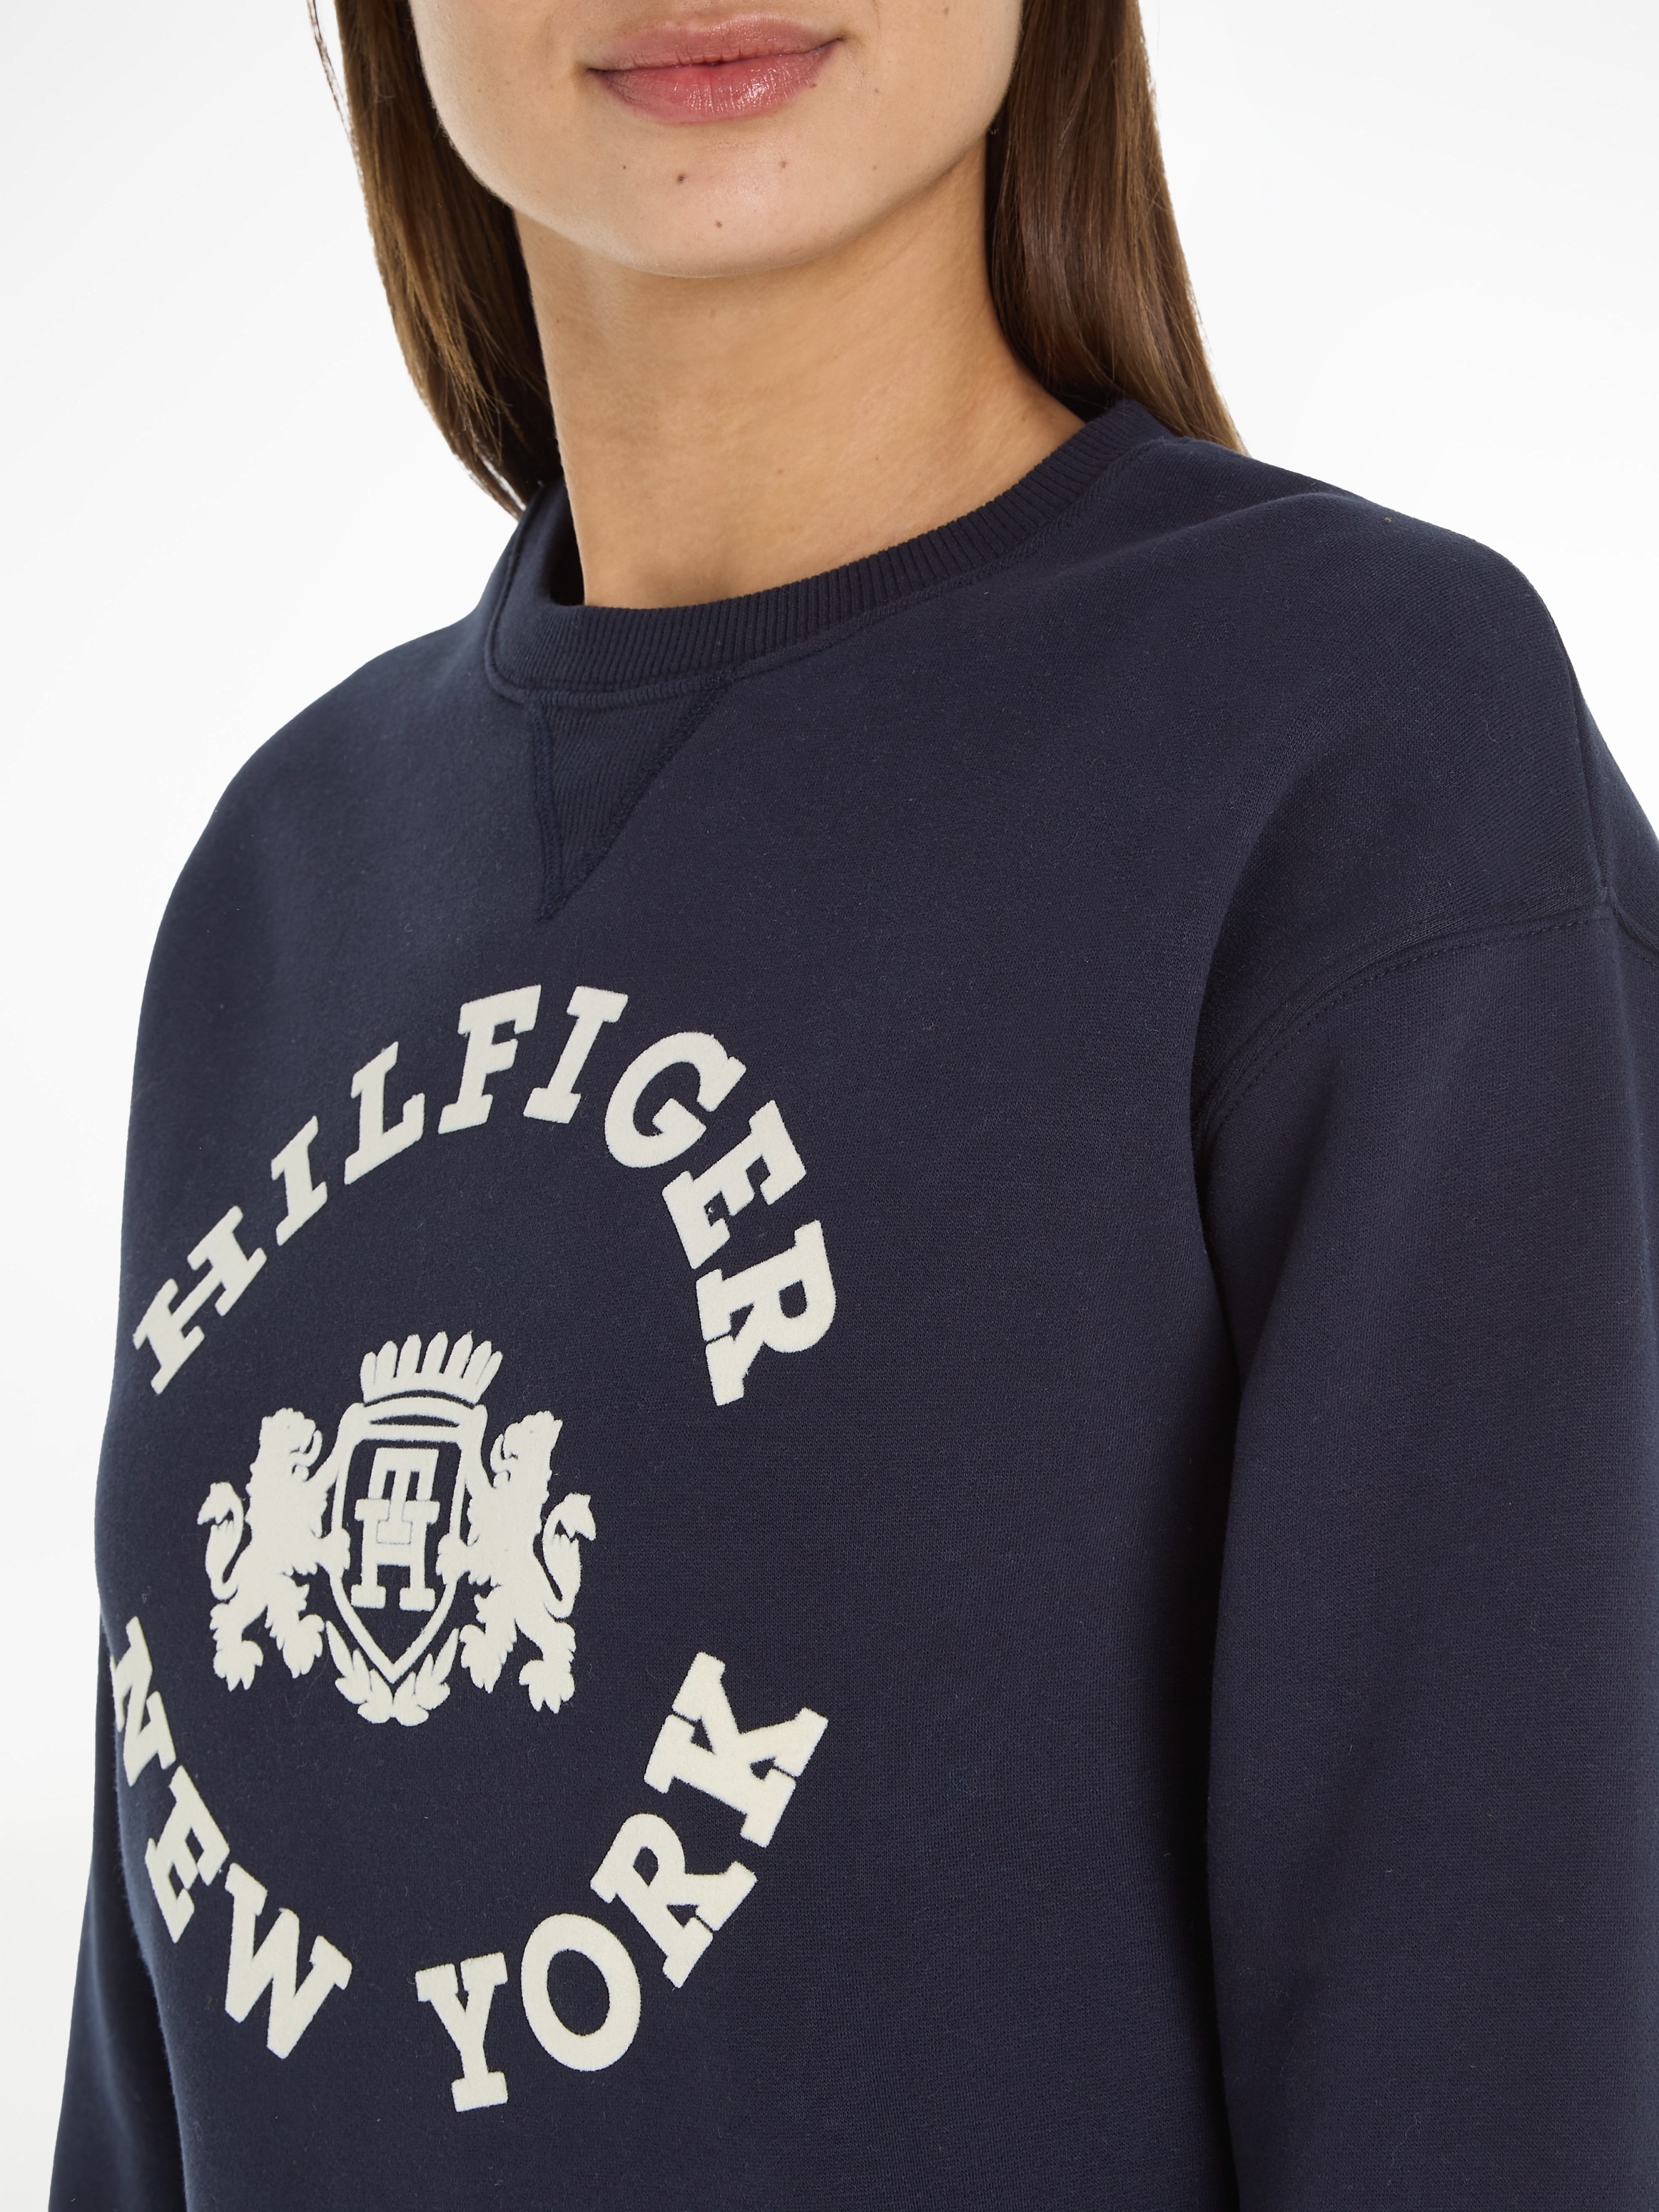 Tommy Hilfiger Sweatshirt REG »MDN mit FLOCK großem SWEATSHIRT«, VARSITY Markenlogo kaufen